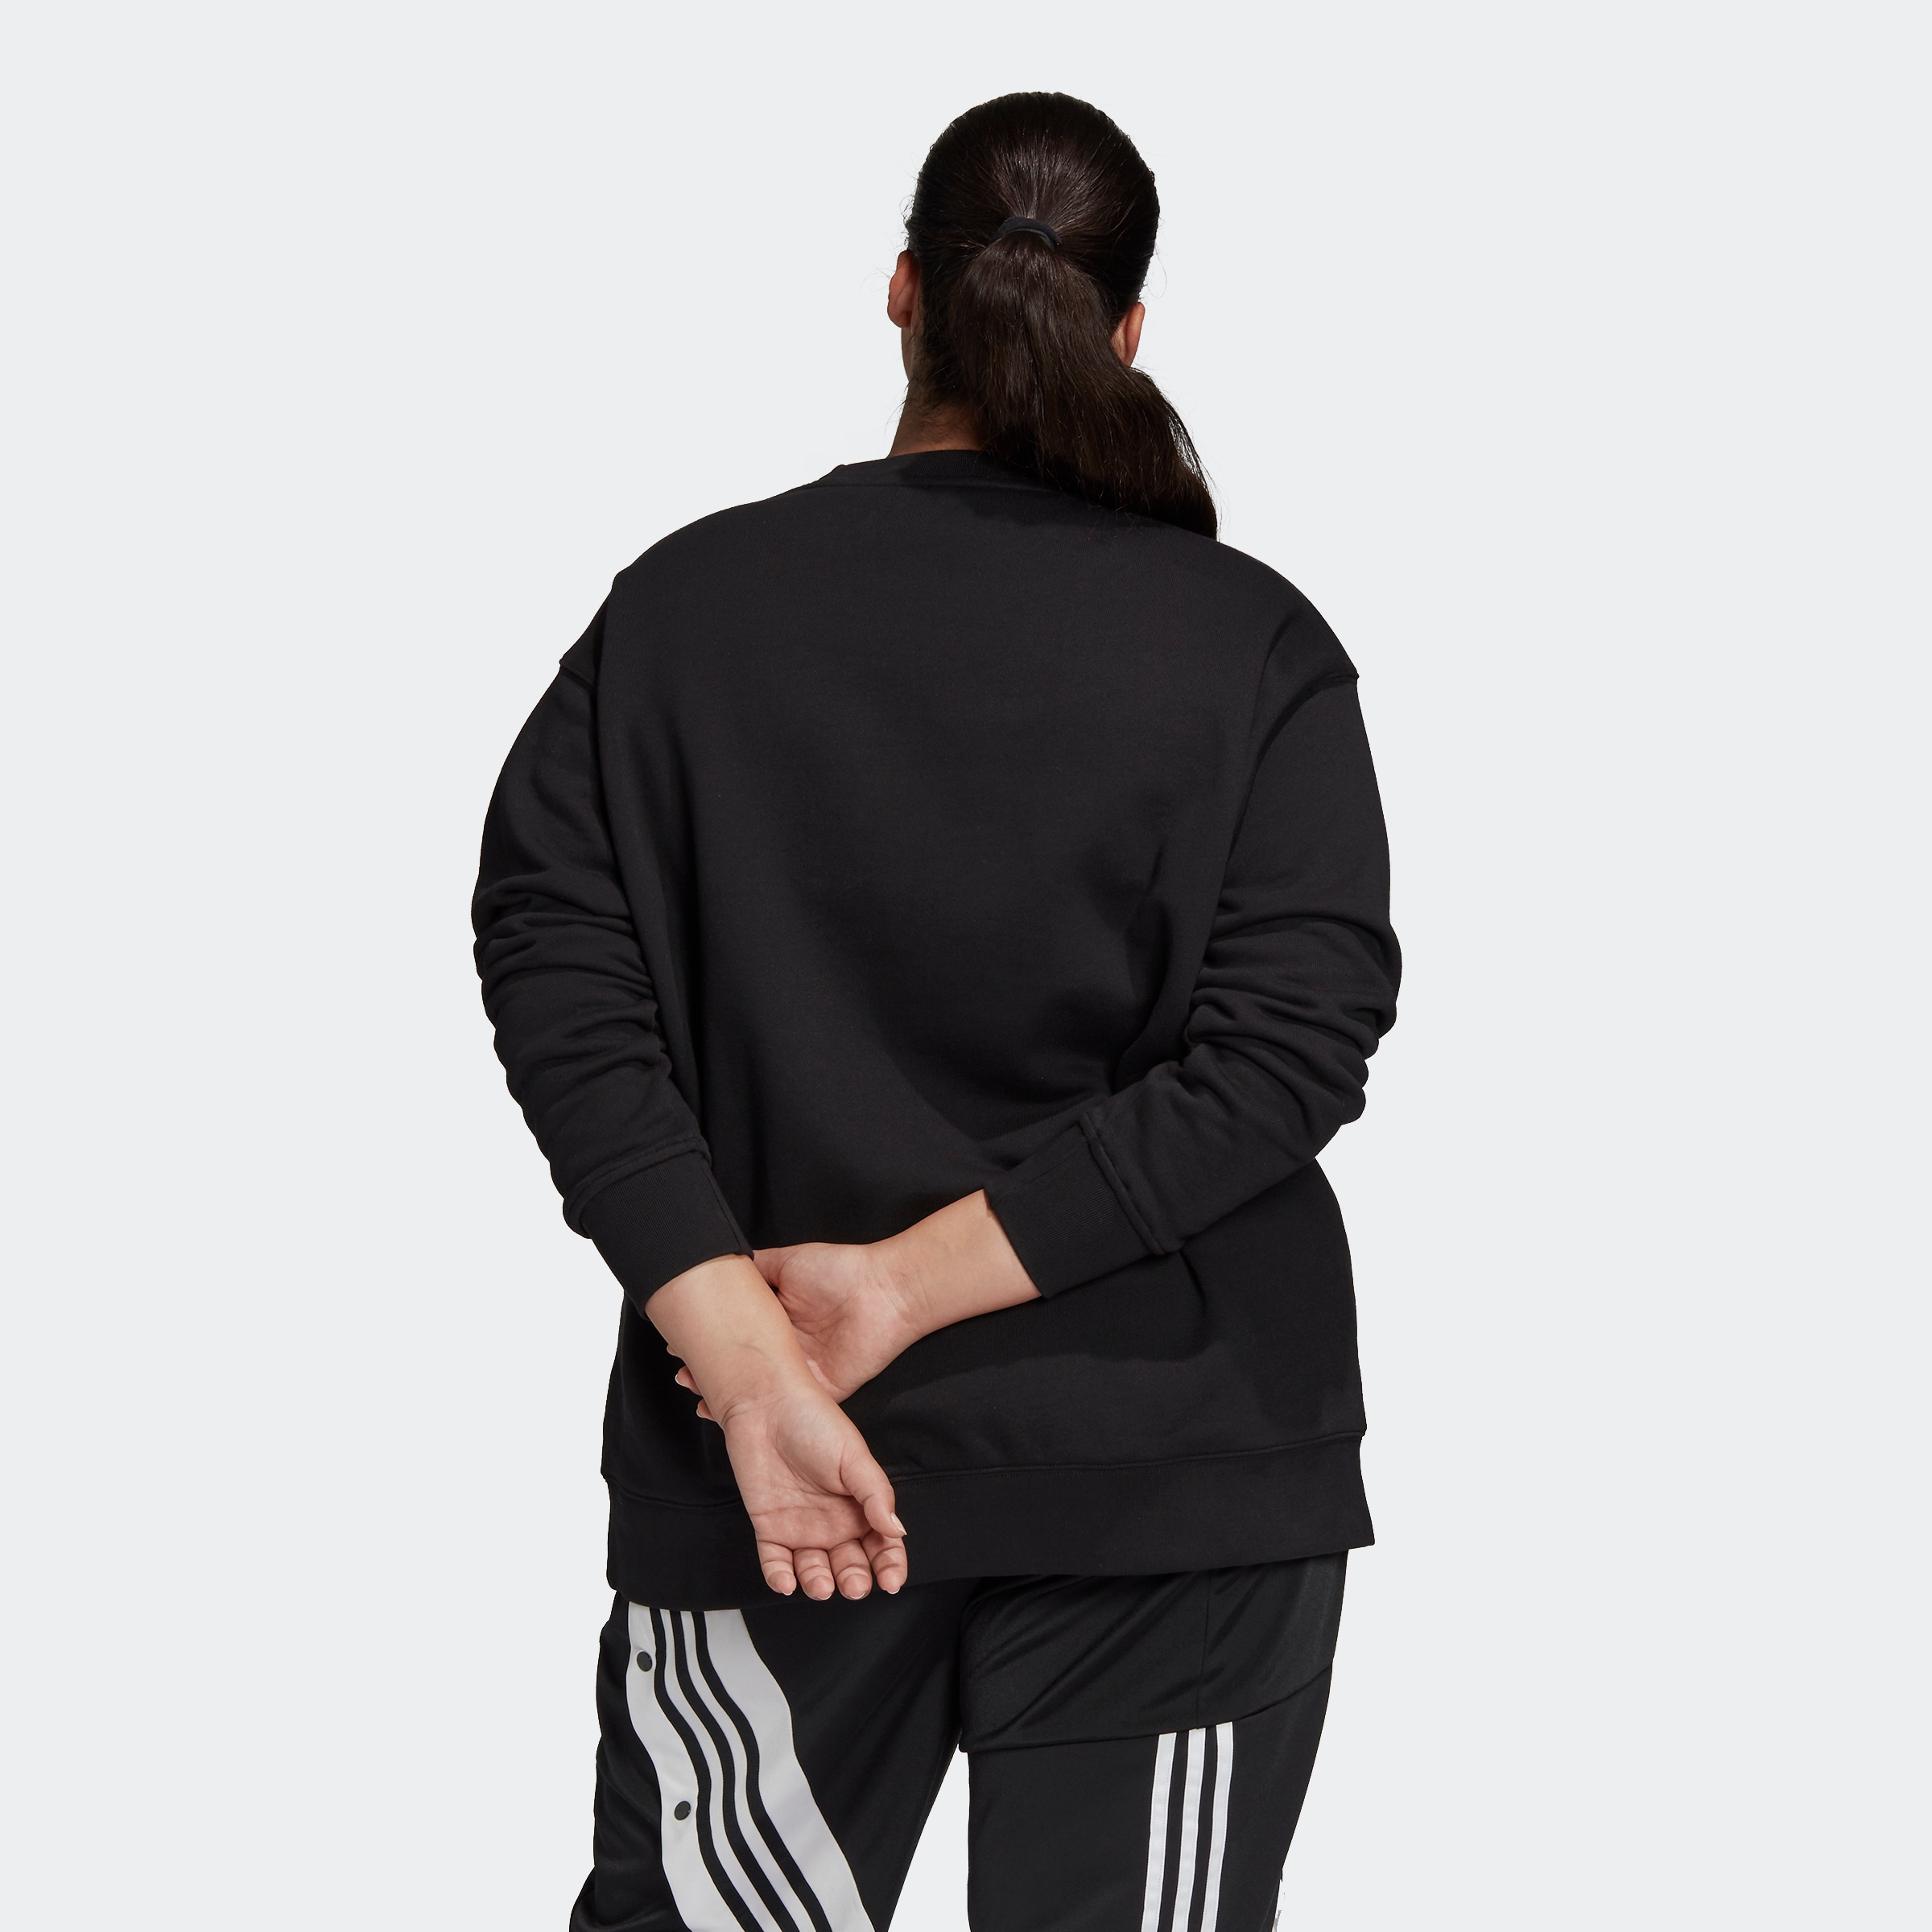 GROSSE »TREFOIL adidas GRÖSSEN« – Originals Sweatshirt shoppen